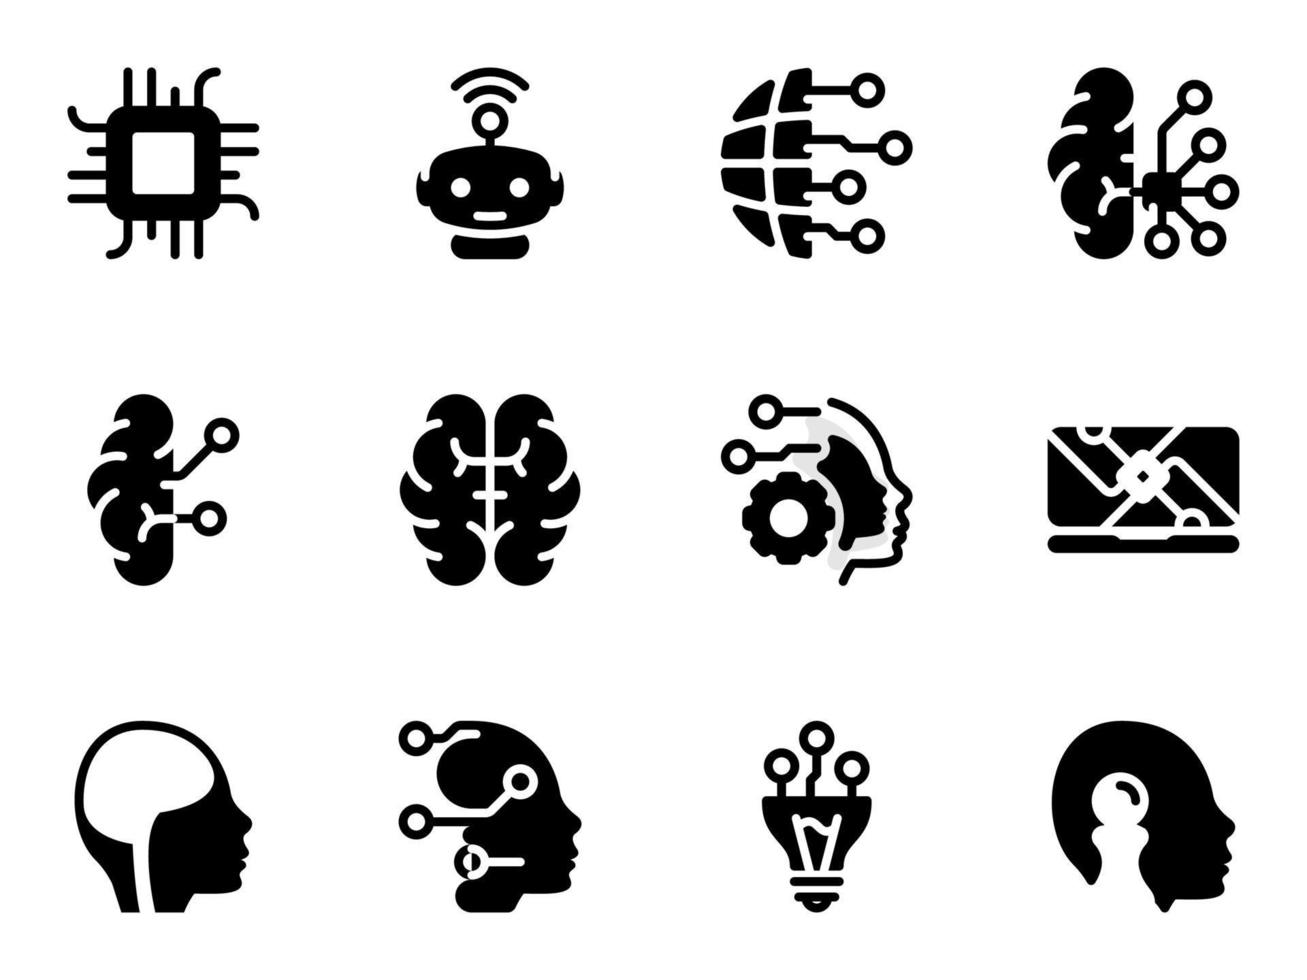 conjunto de ícones do vetor preto, isolados contra um fundo branco. ilustração plana em um tema de inteligência artificial, integração com o cérebro humano. preencher, glifo